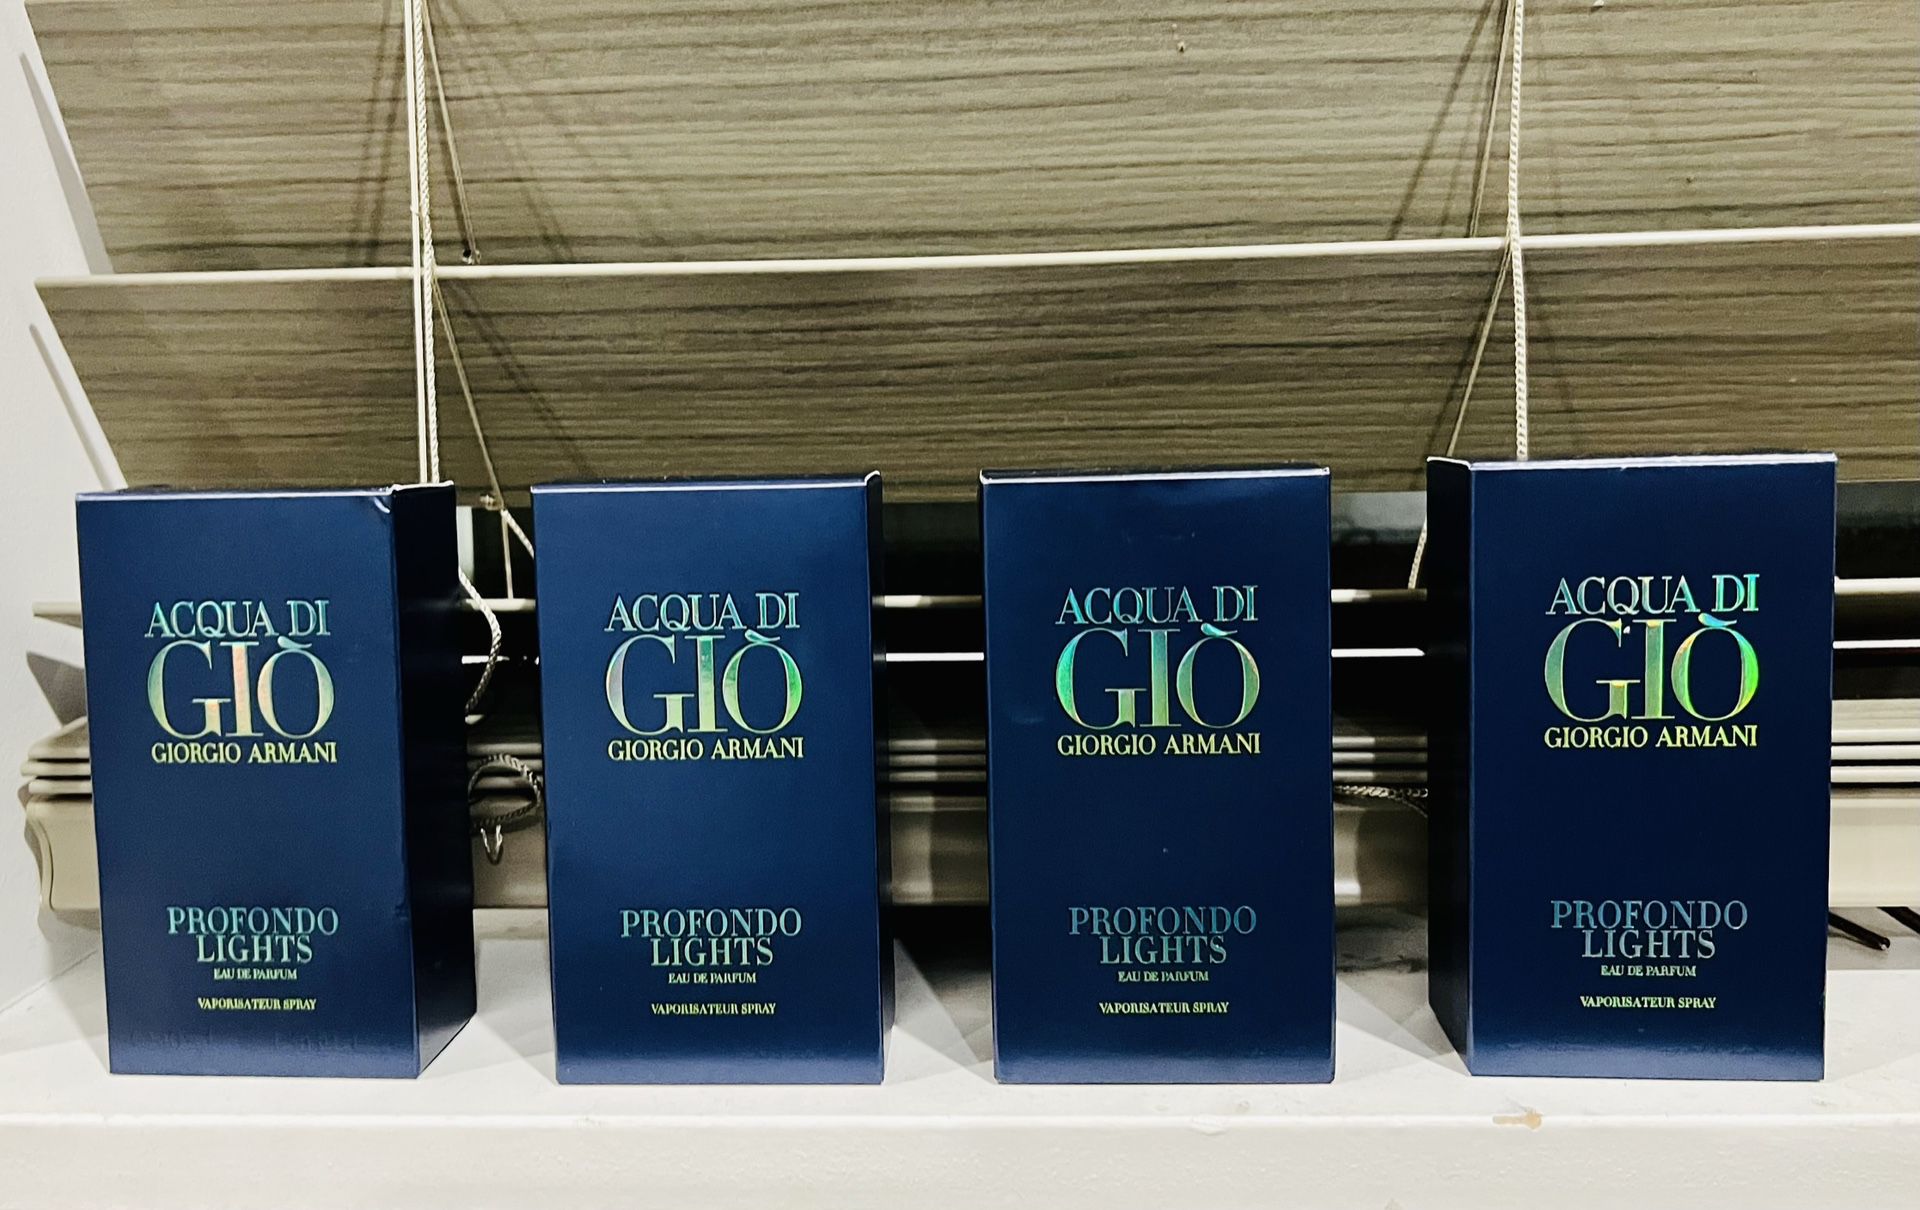 Giorgio Armani Acqua Di Gio Profondo Eau De Parfum 40 ml / 1.35 oz